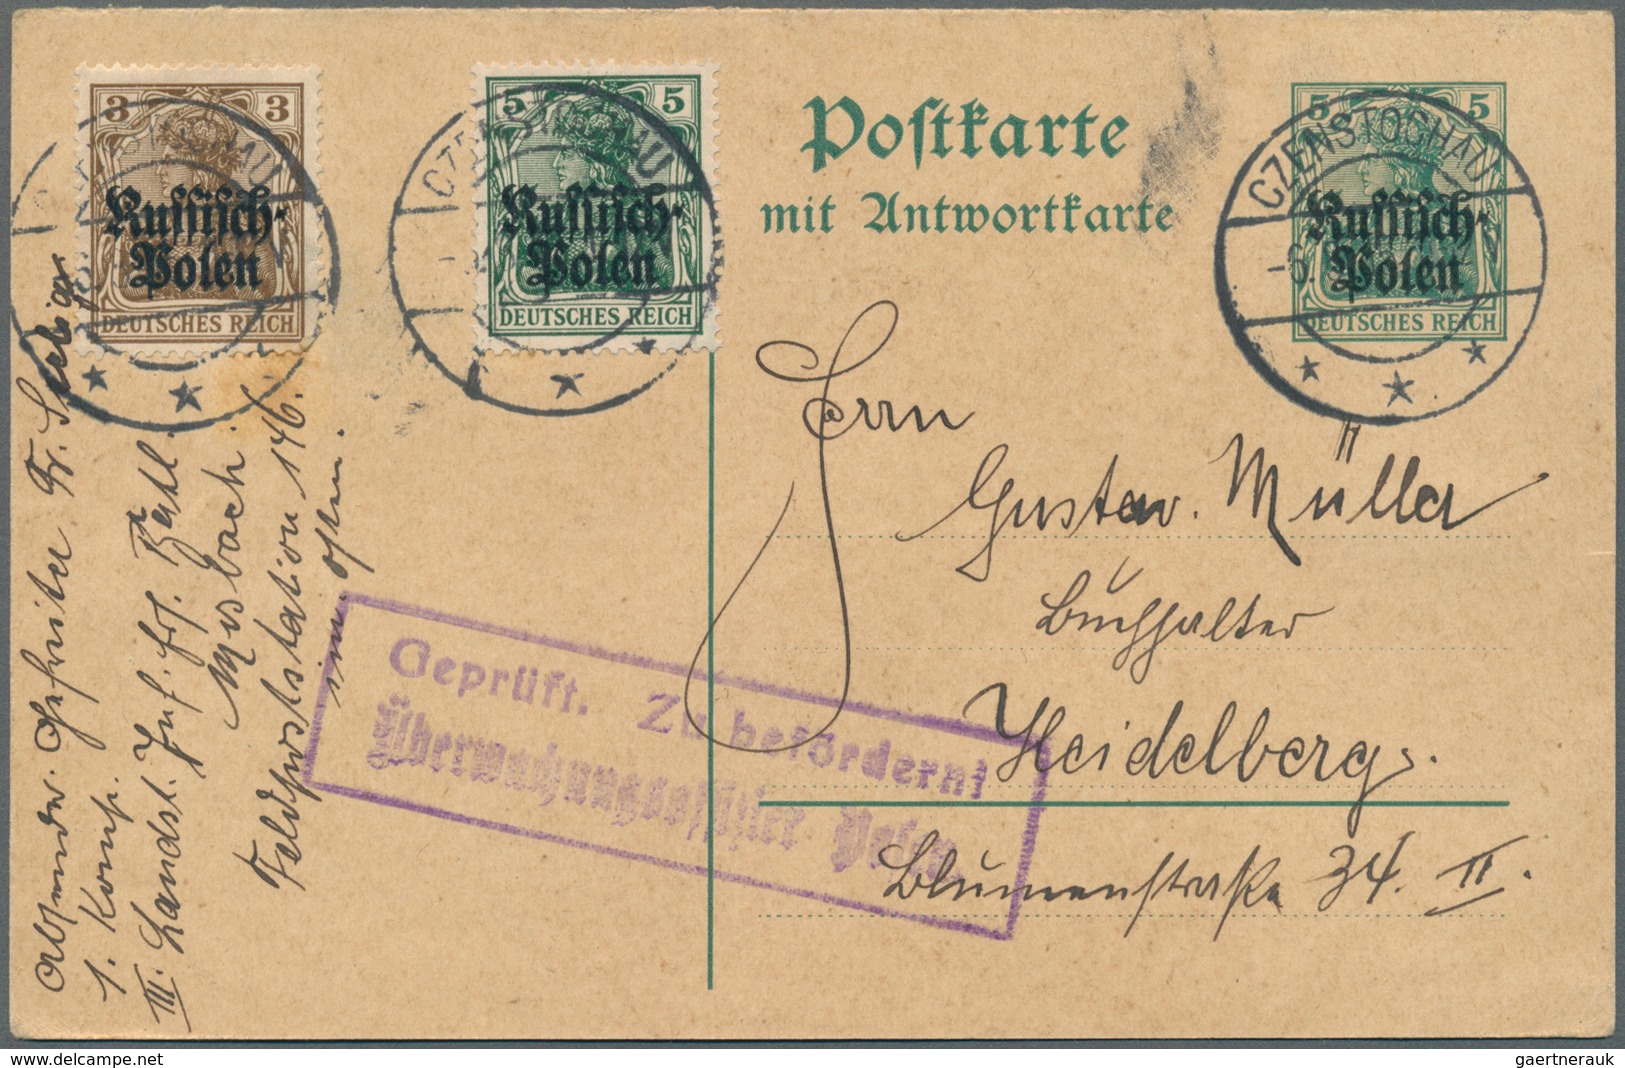 31881 Deutsche Besetzung I. WK: Deutsche Post in Polen: 1914/1918, Lot von sieben Briefen und Karten, dabe